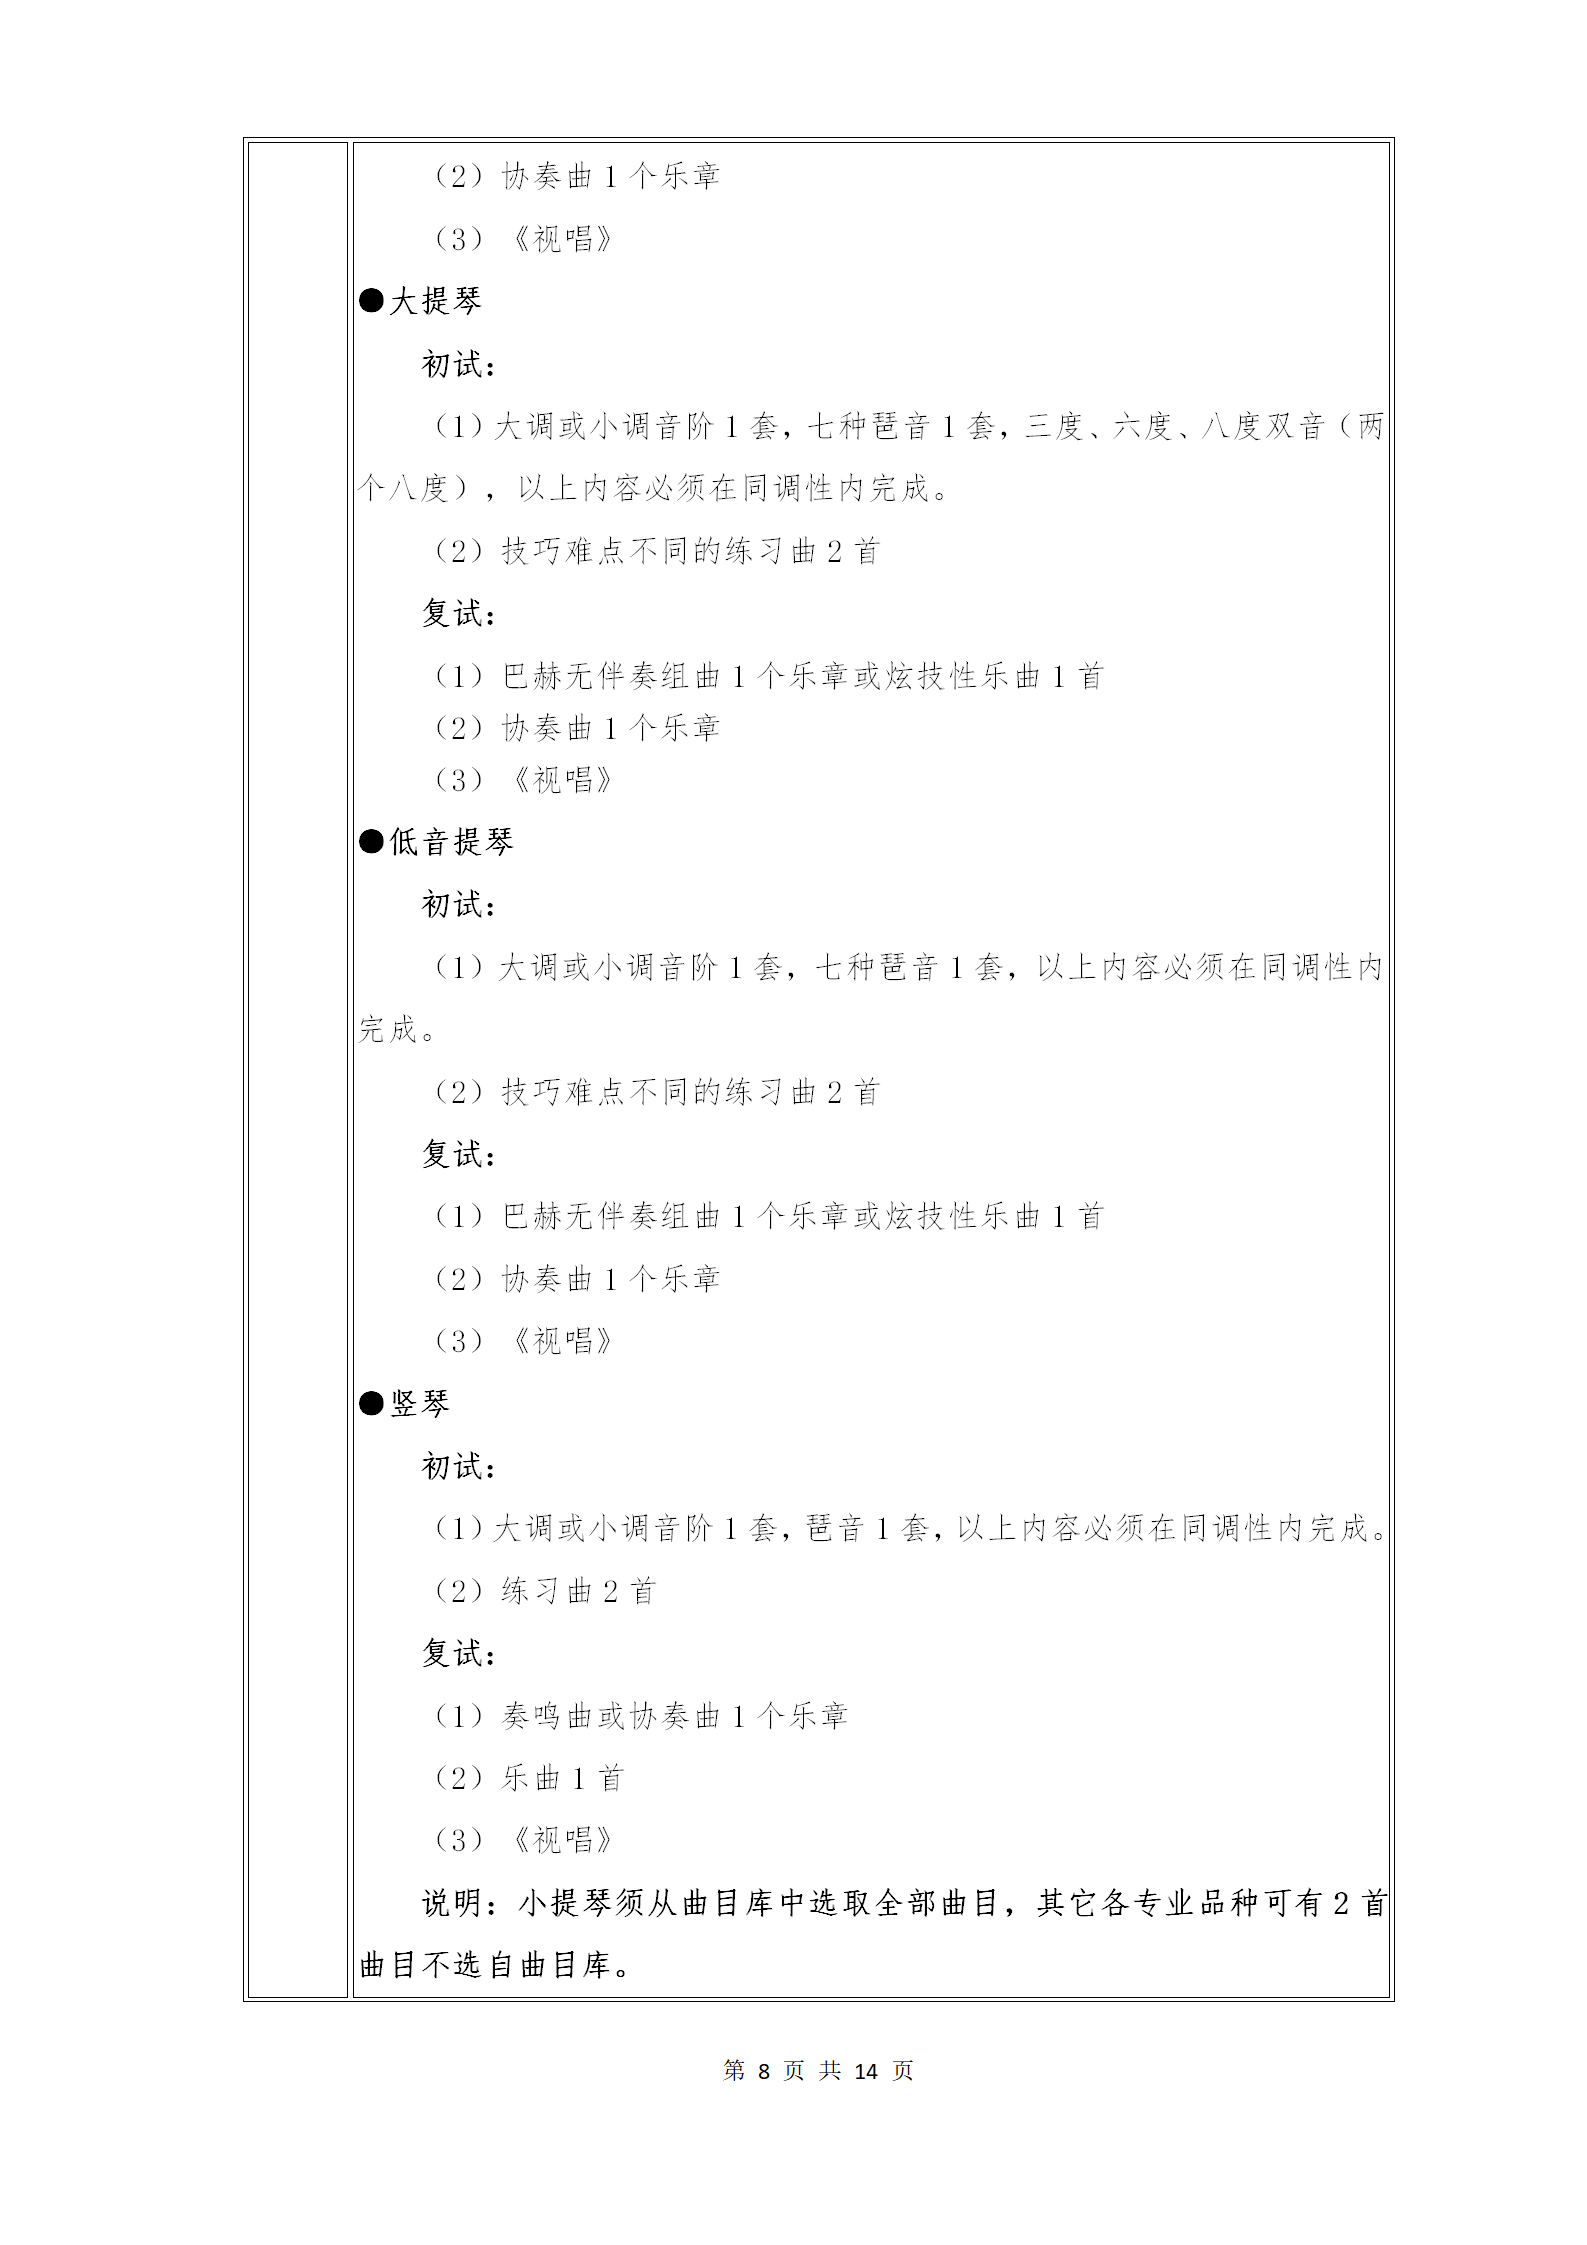 附件1：武汉音乐学院2021年普通本科招生专业考试内容和计分方法（调整版）_08.png